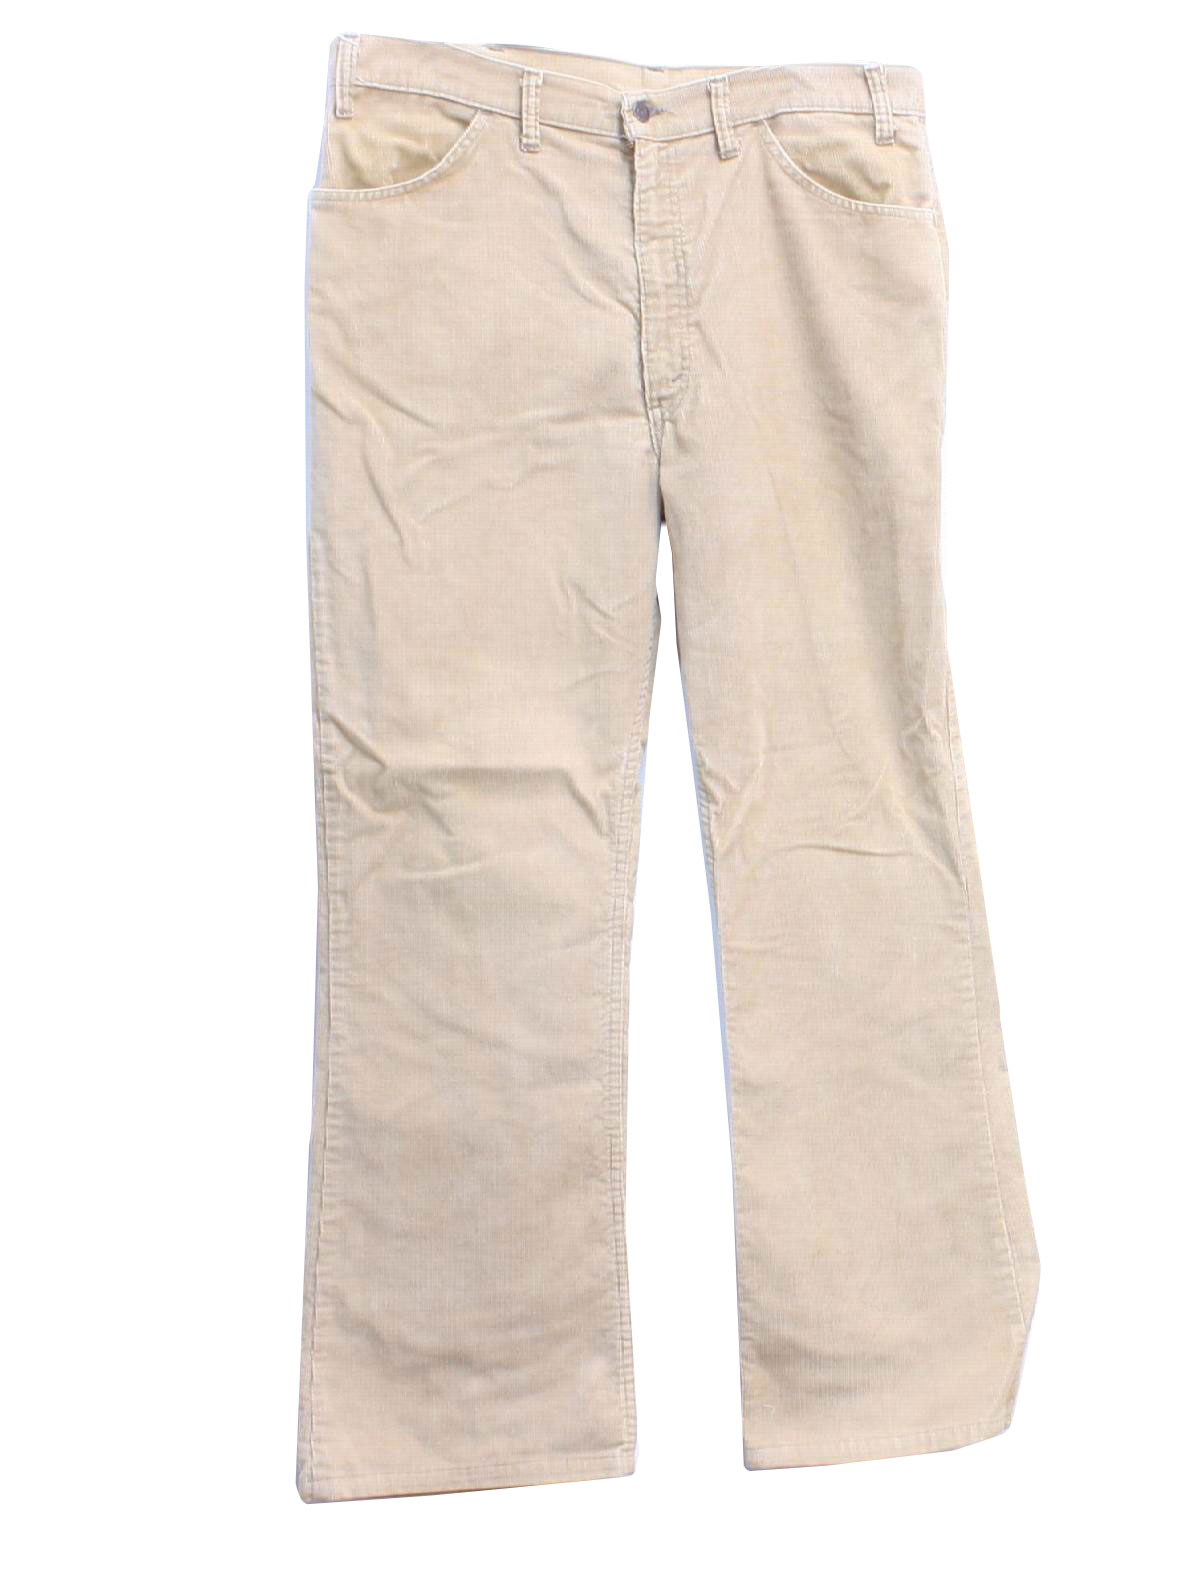 Vintage 1970's Flared Pants / Flares: 70s -Levis- Mens tan cotton ...